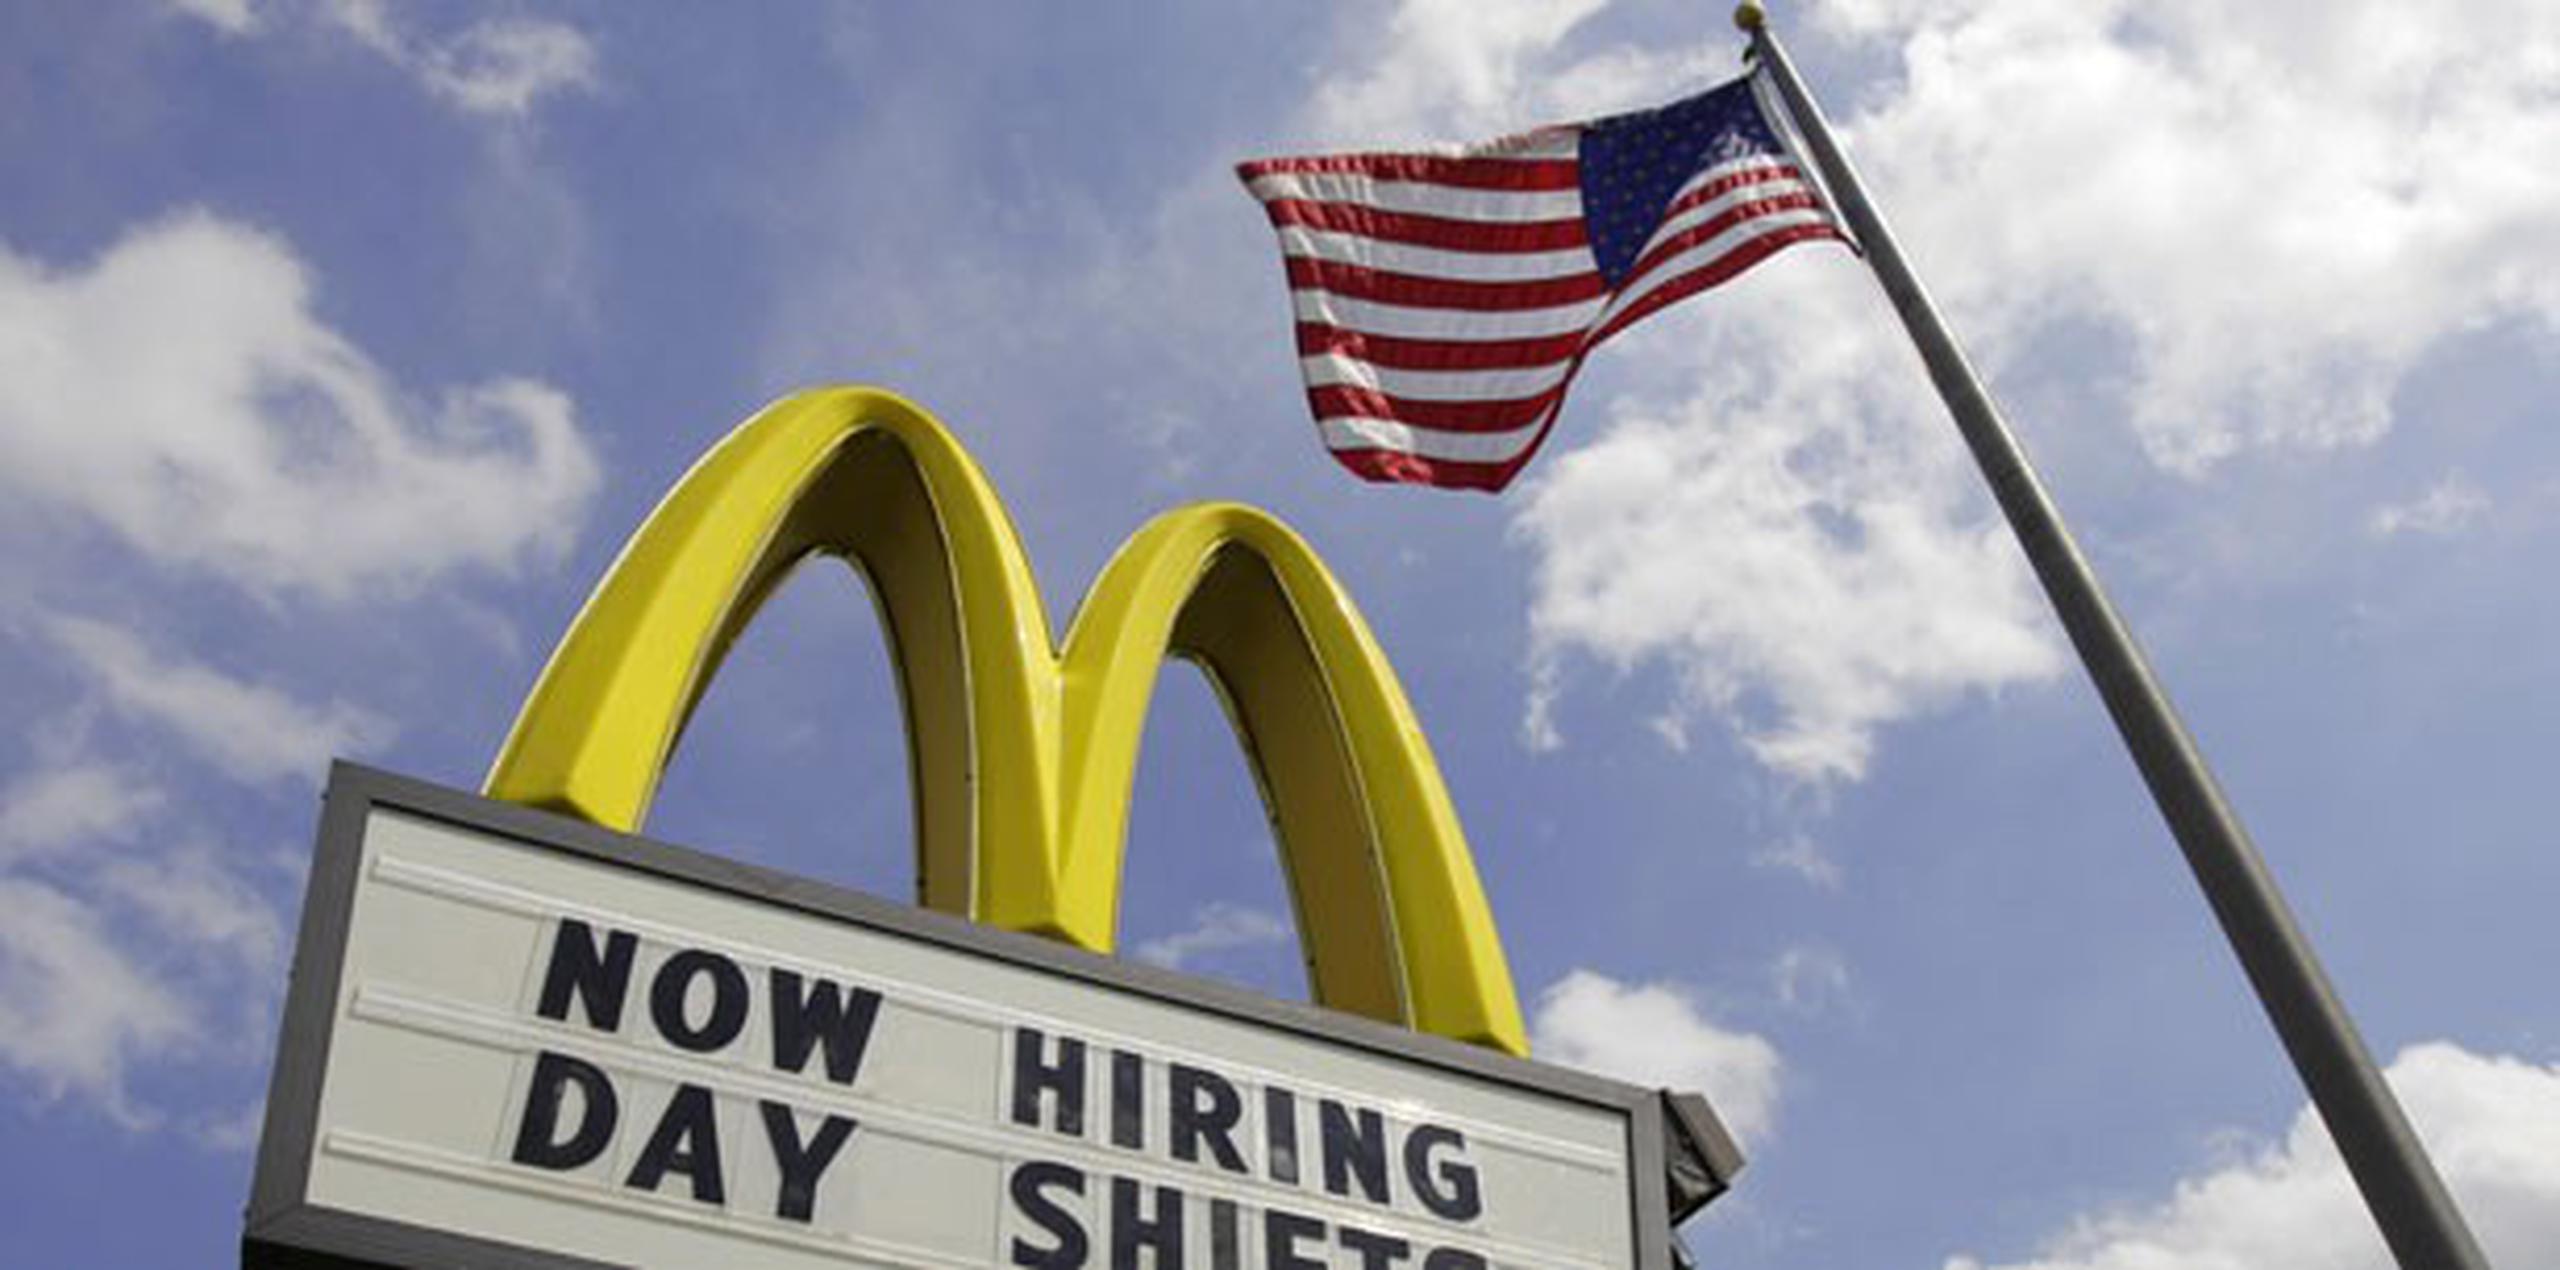 Con el anuncio de hoy, McDonald's sigue la estela del gigante minorista Wal-Mart, que también anunció una subida salarial a sus empleados hasta los 10 dólares por hora. (AP Photo/Amy Sancetta, File)
